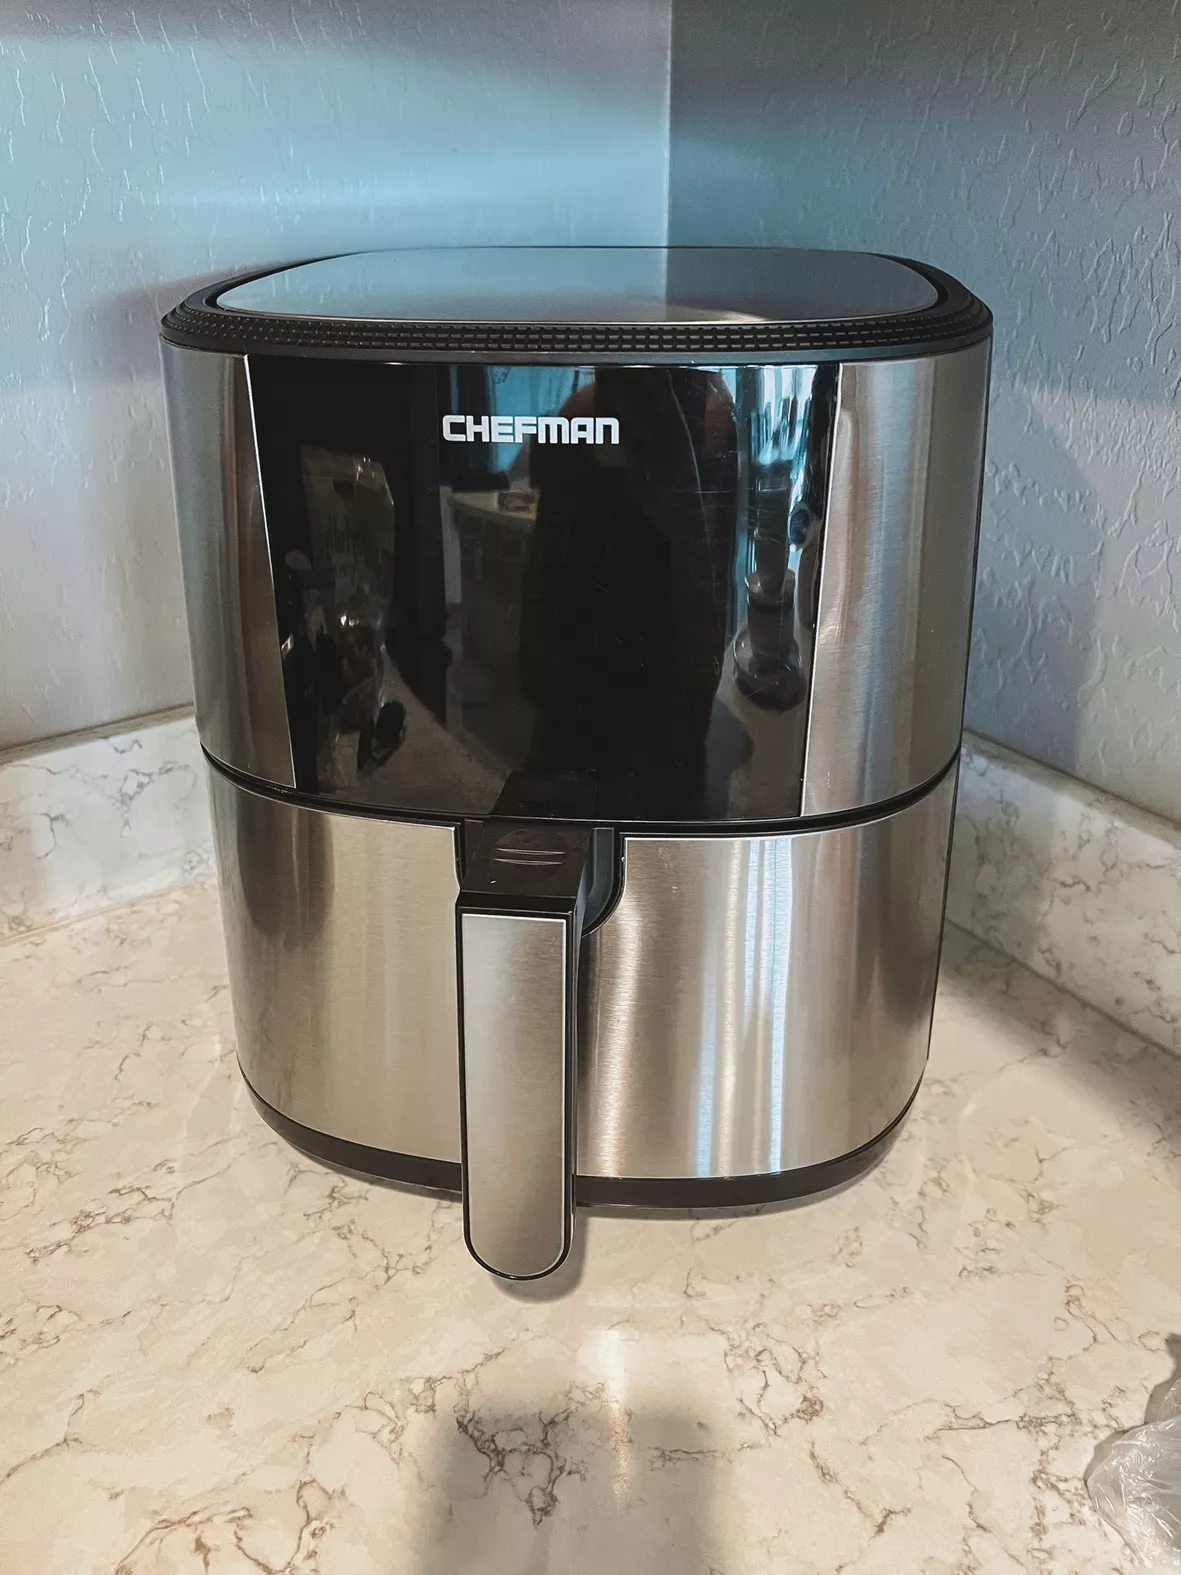 Chefman Home Appliances